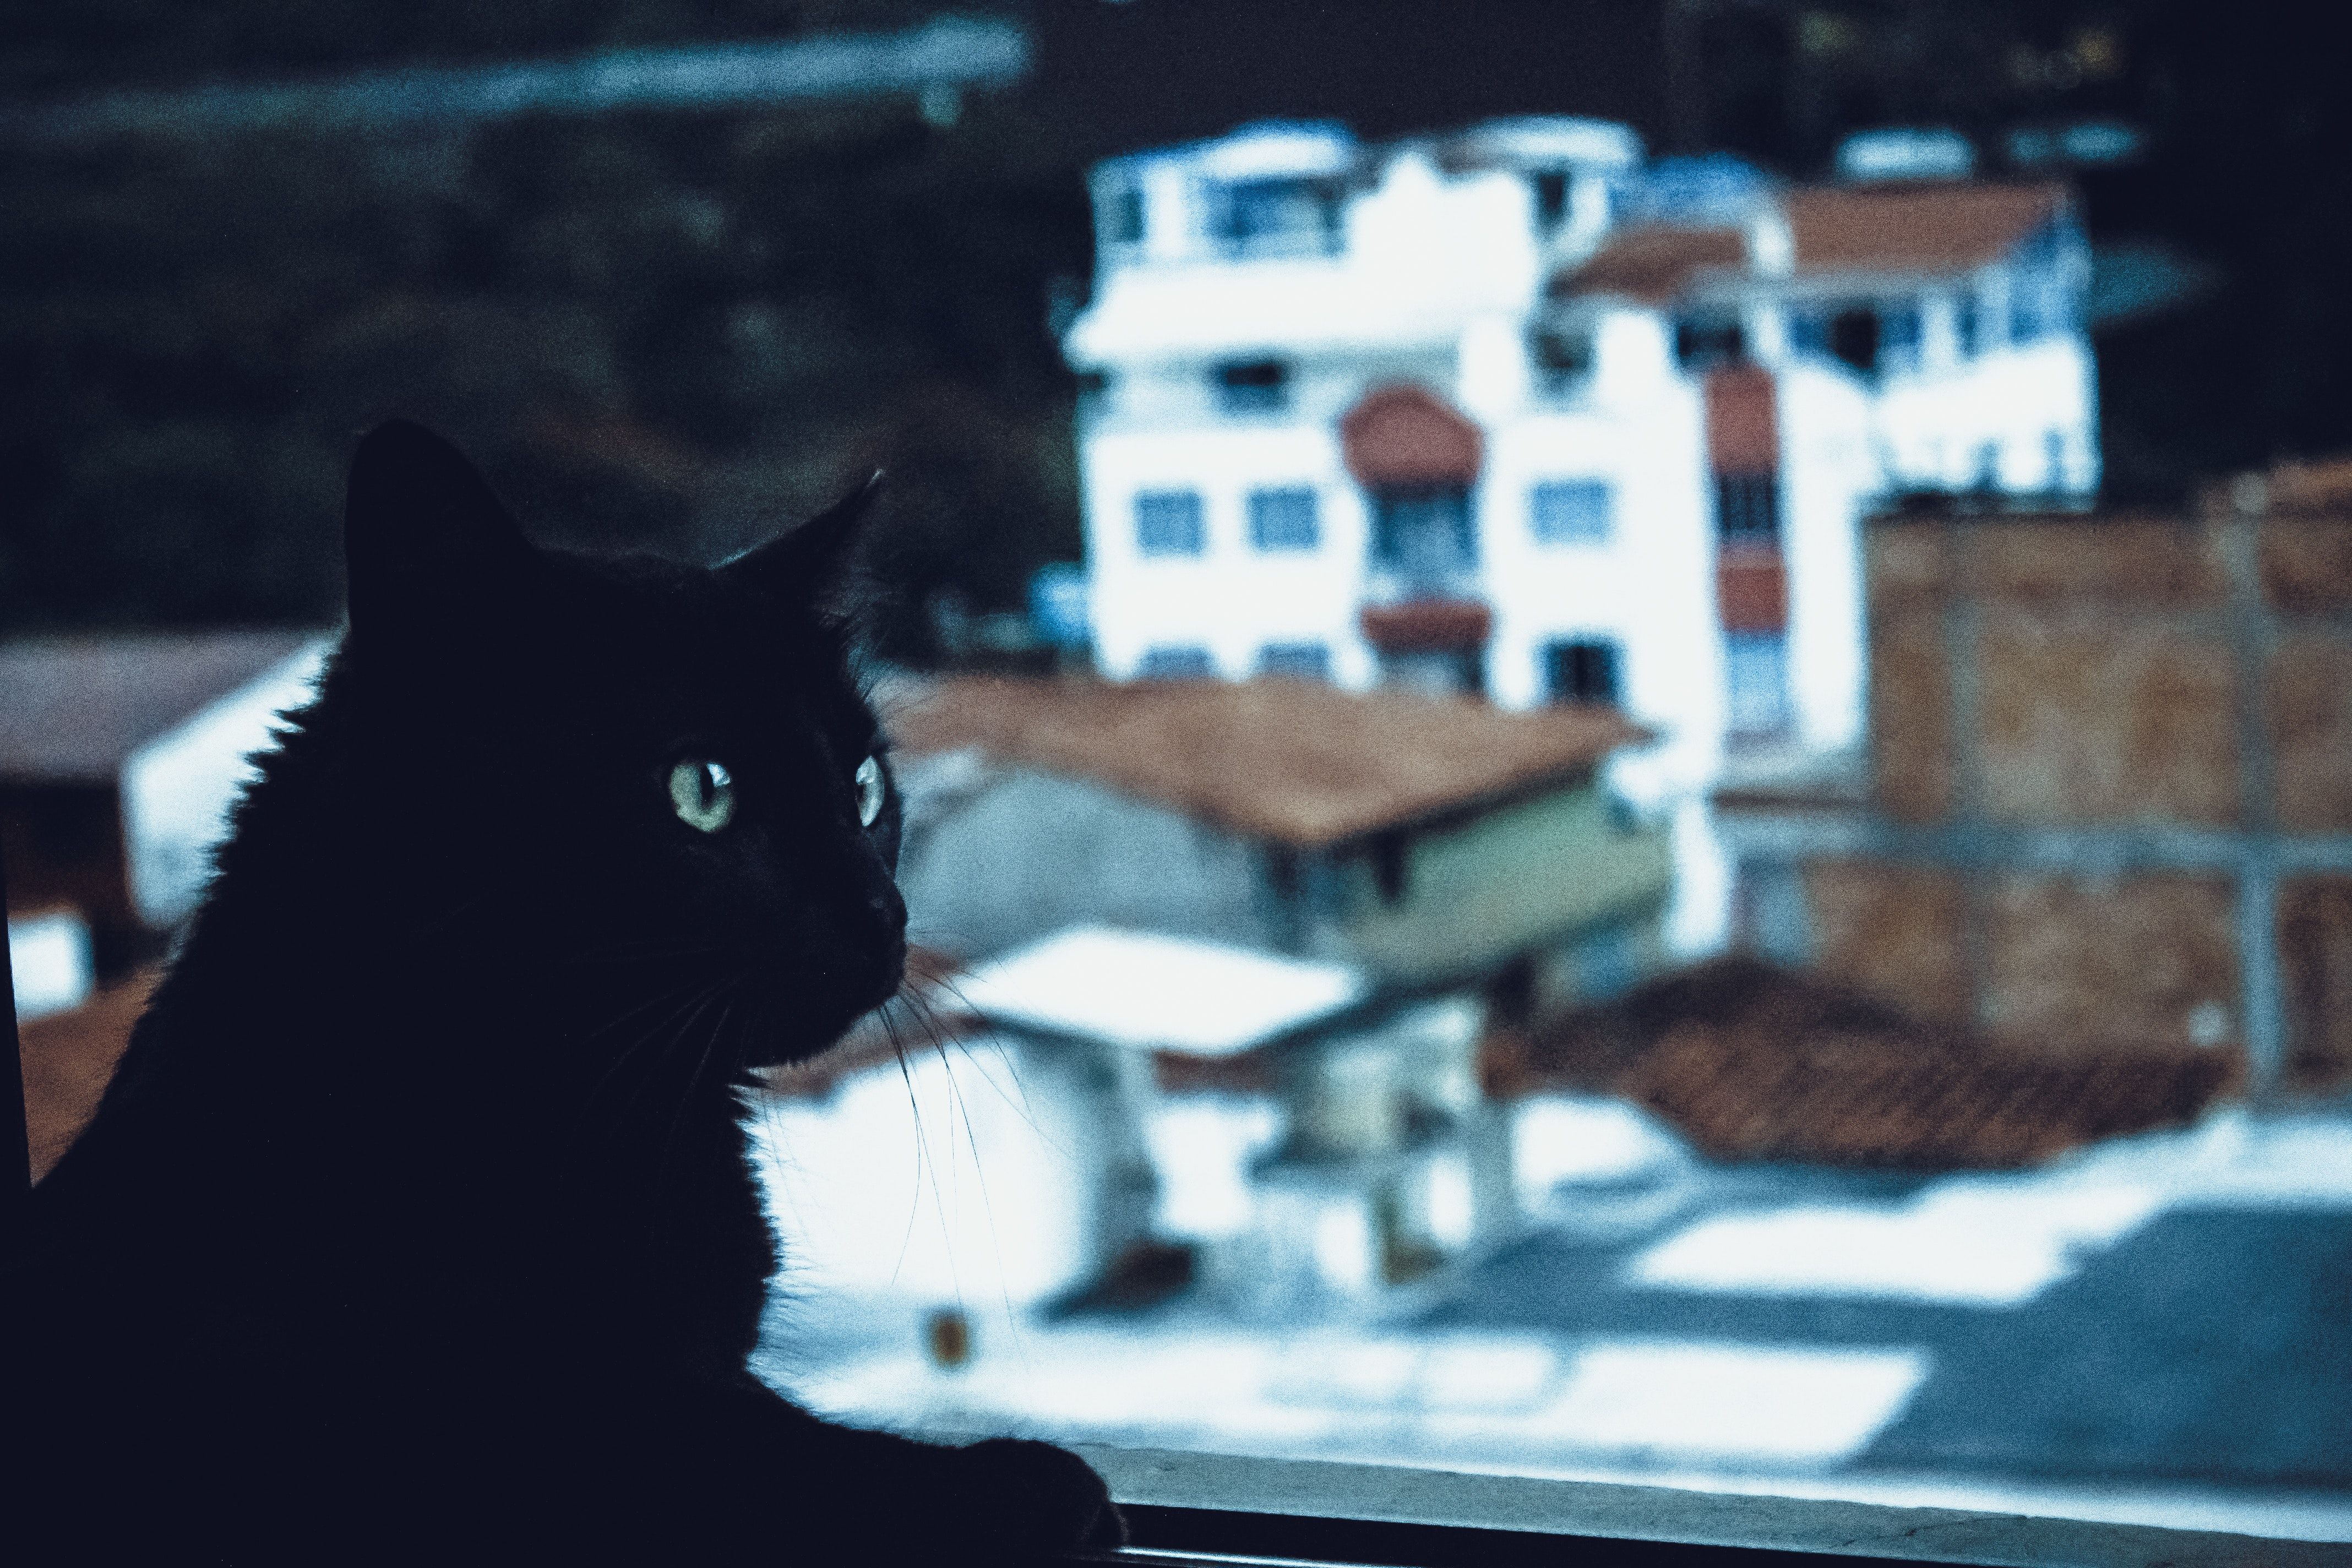  Katze Hintergrundbild 4272x2848. 200.Schwarze Katze Bilder Und Fotos · Kostenlos Downloaden · Stock Fotos